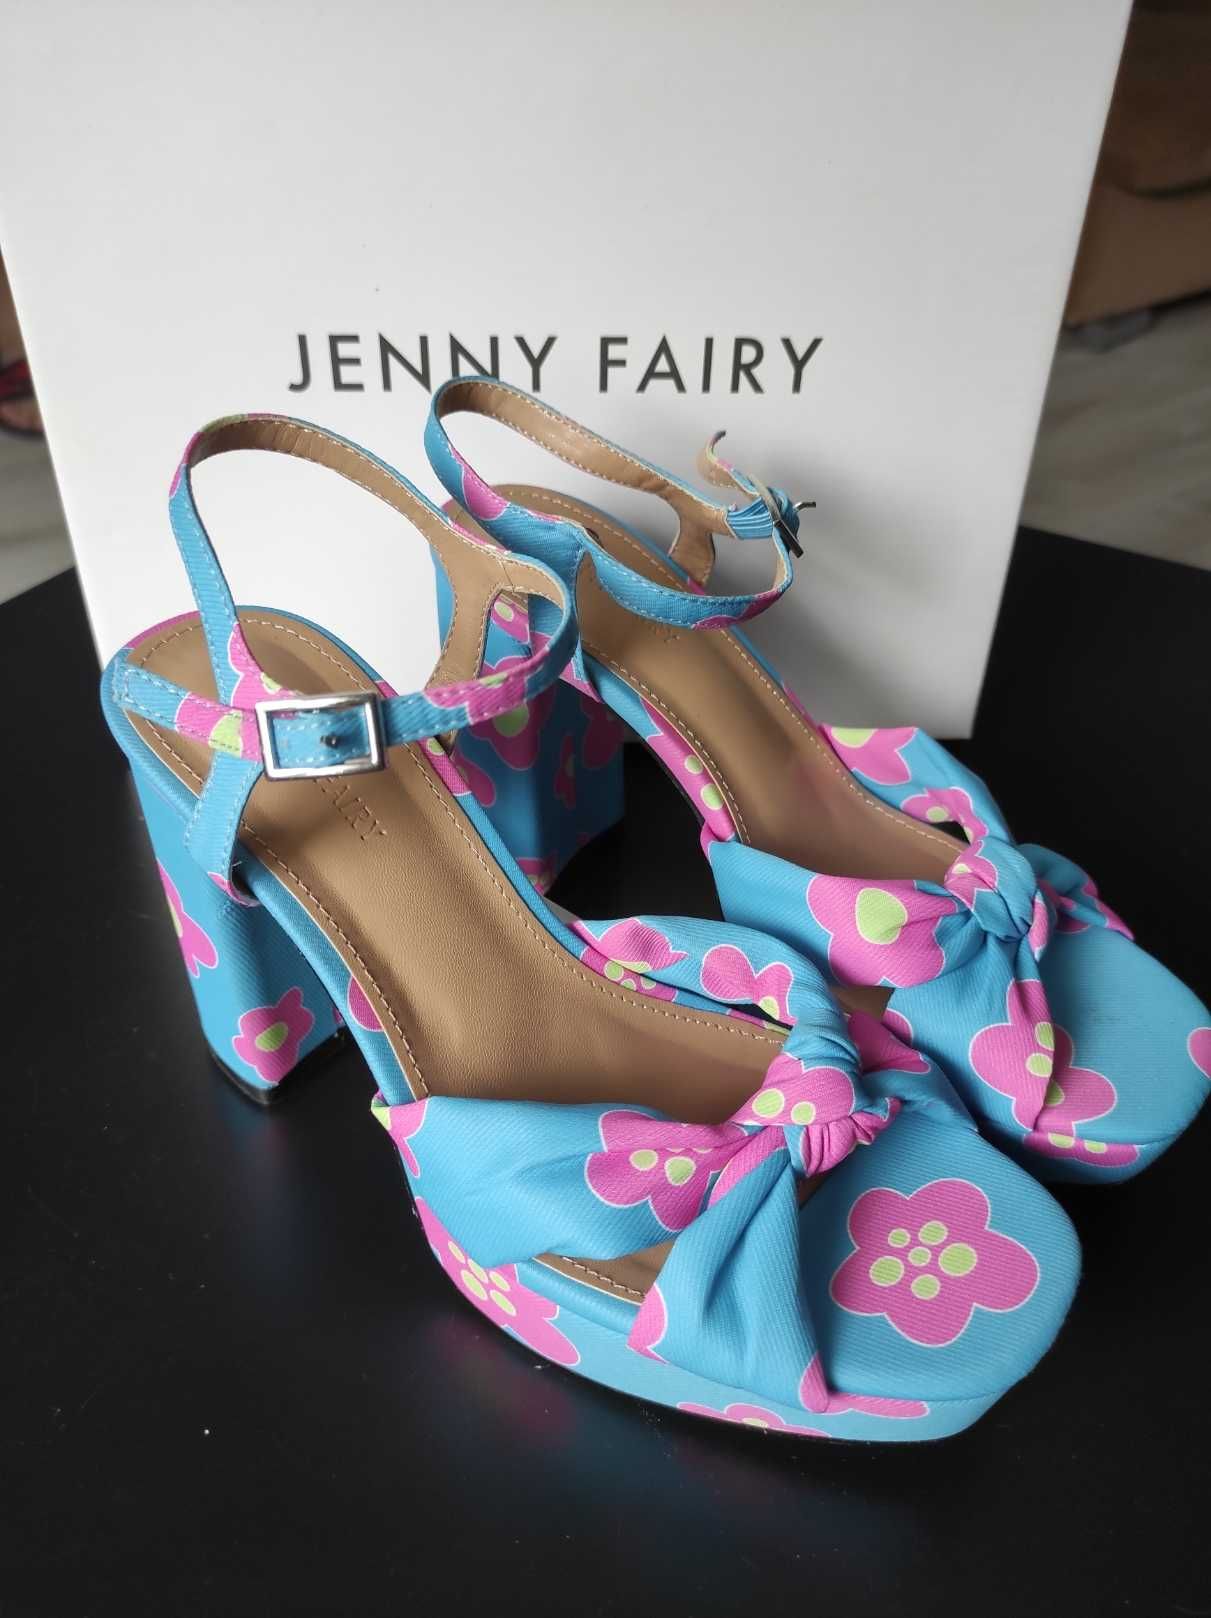 NOWE sandałki Jenny Fairy, rozmiar 36, z metką.